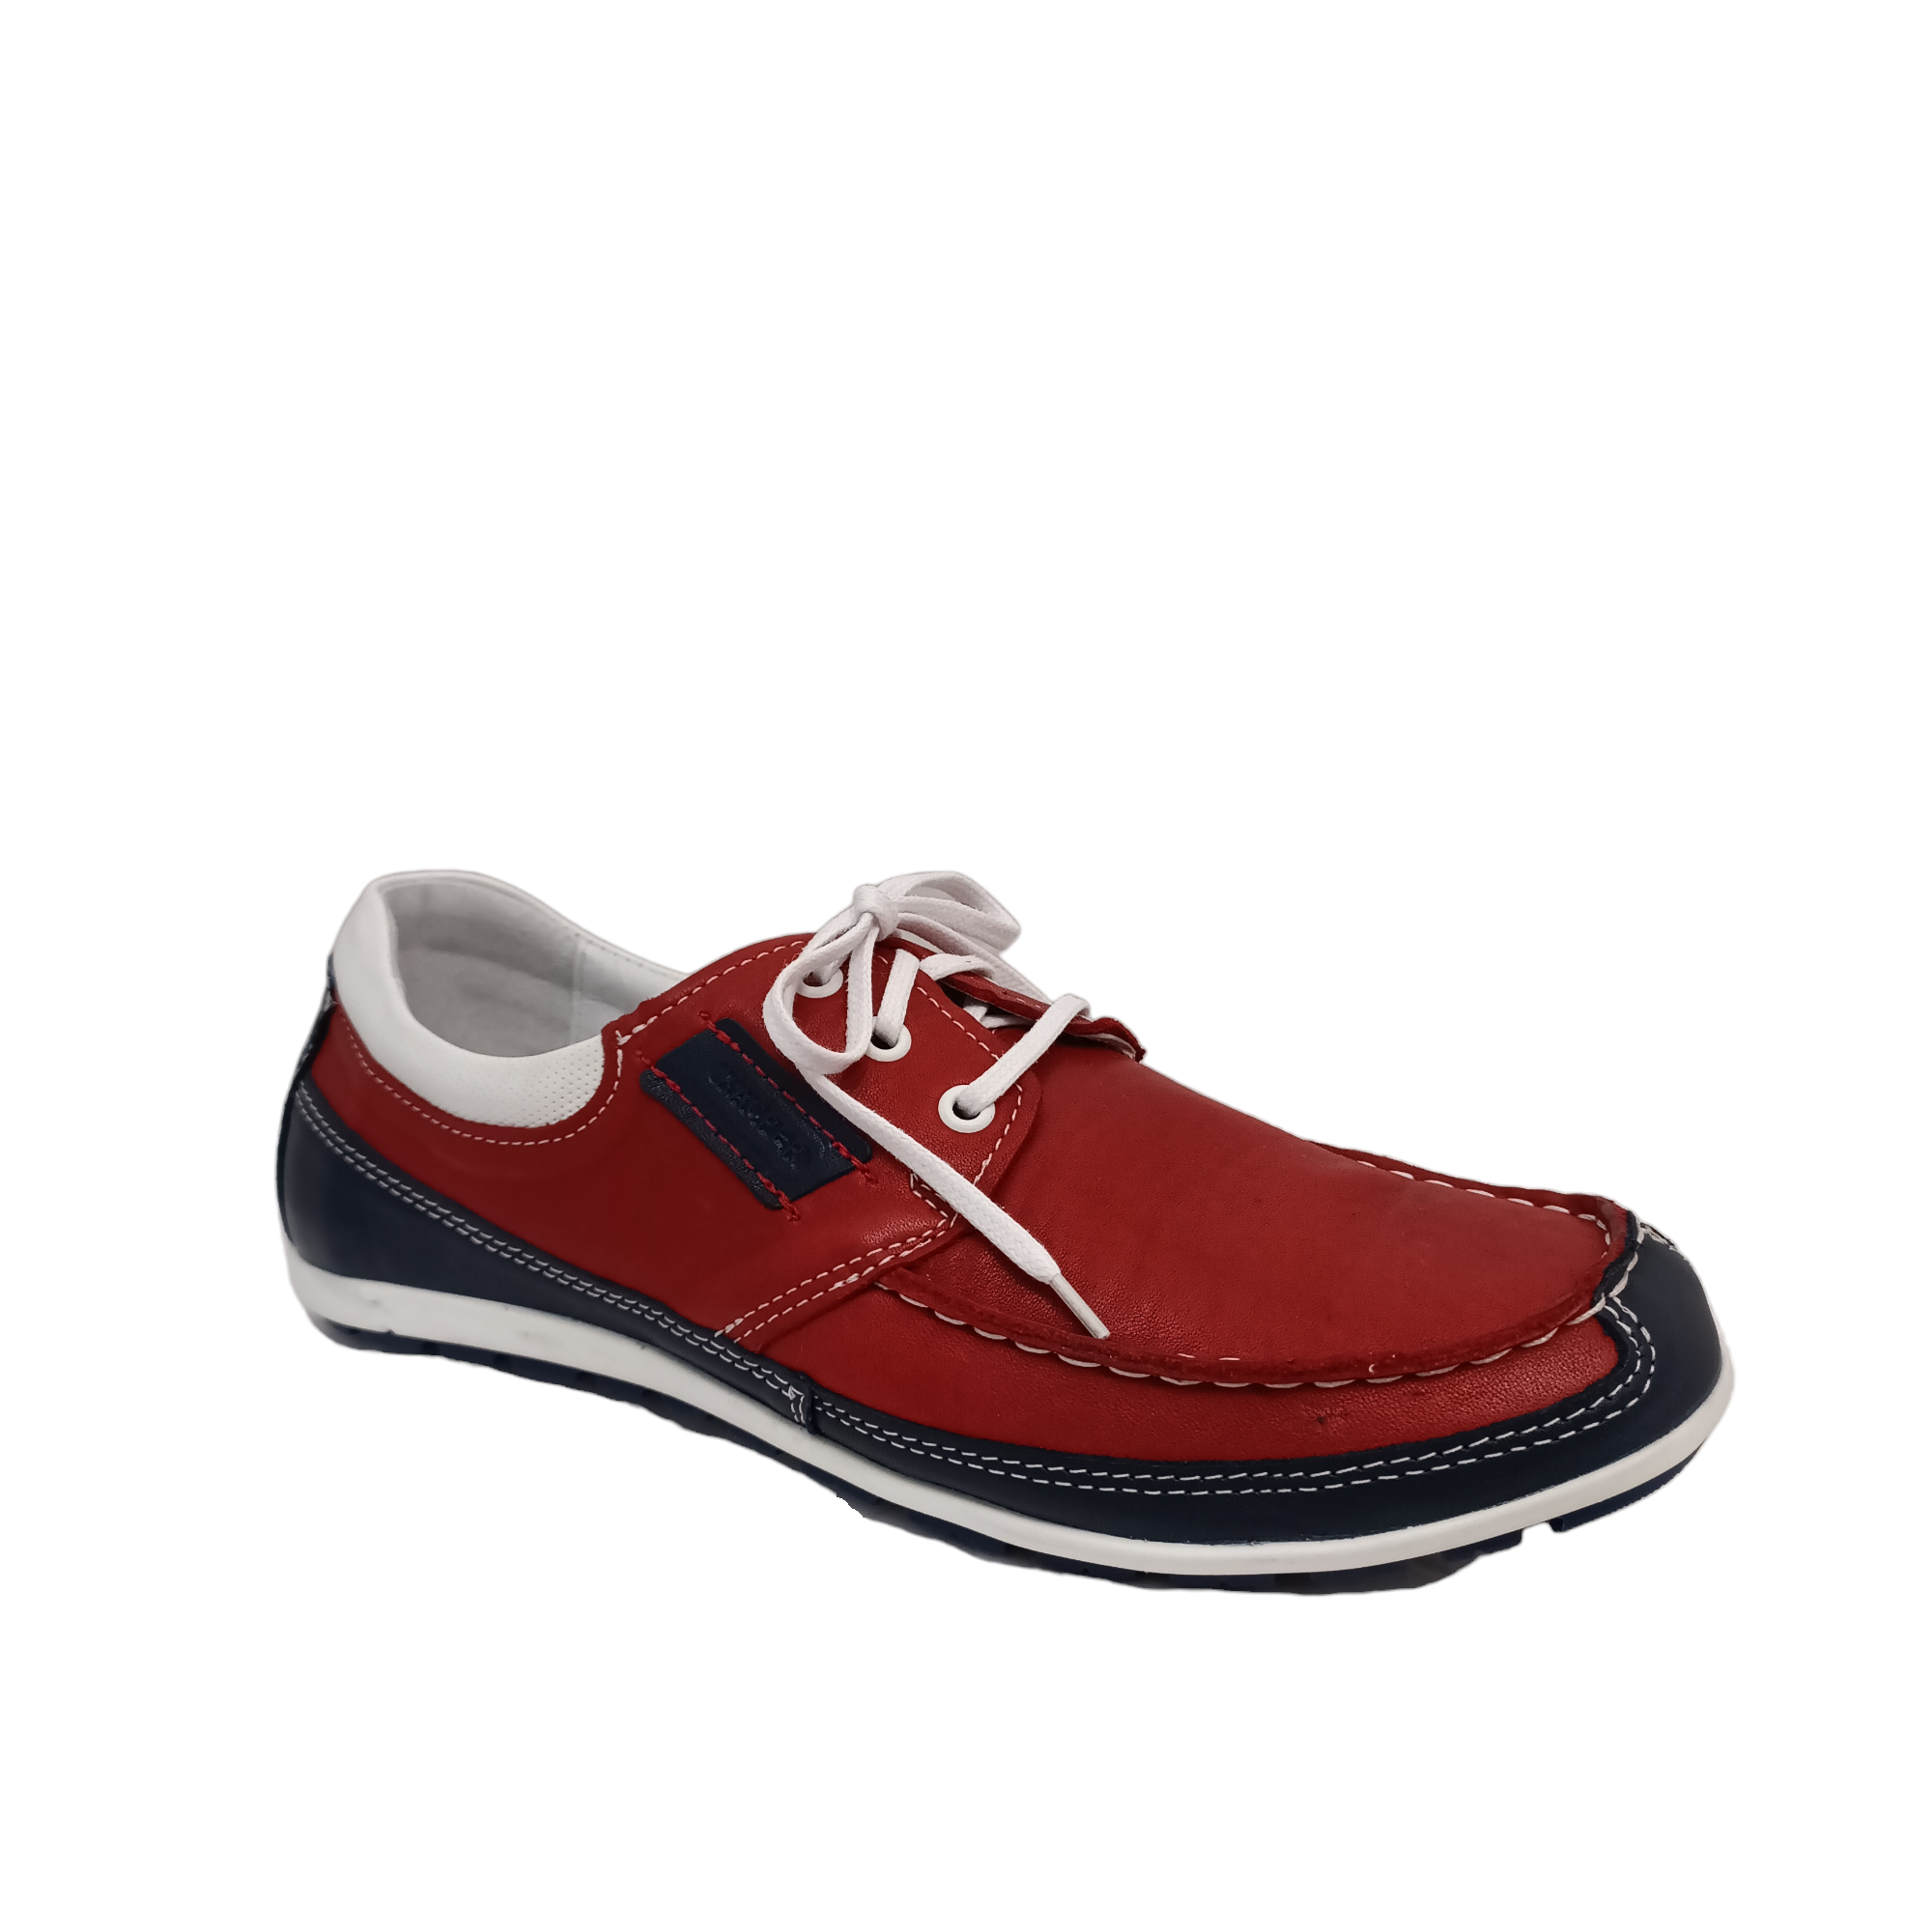 Kacper 1-0808 - shoe&amp;me - Kacper - Shoe - Mens, Shoes, Summer